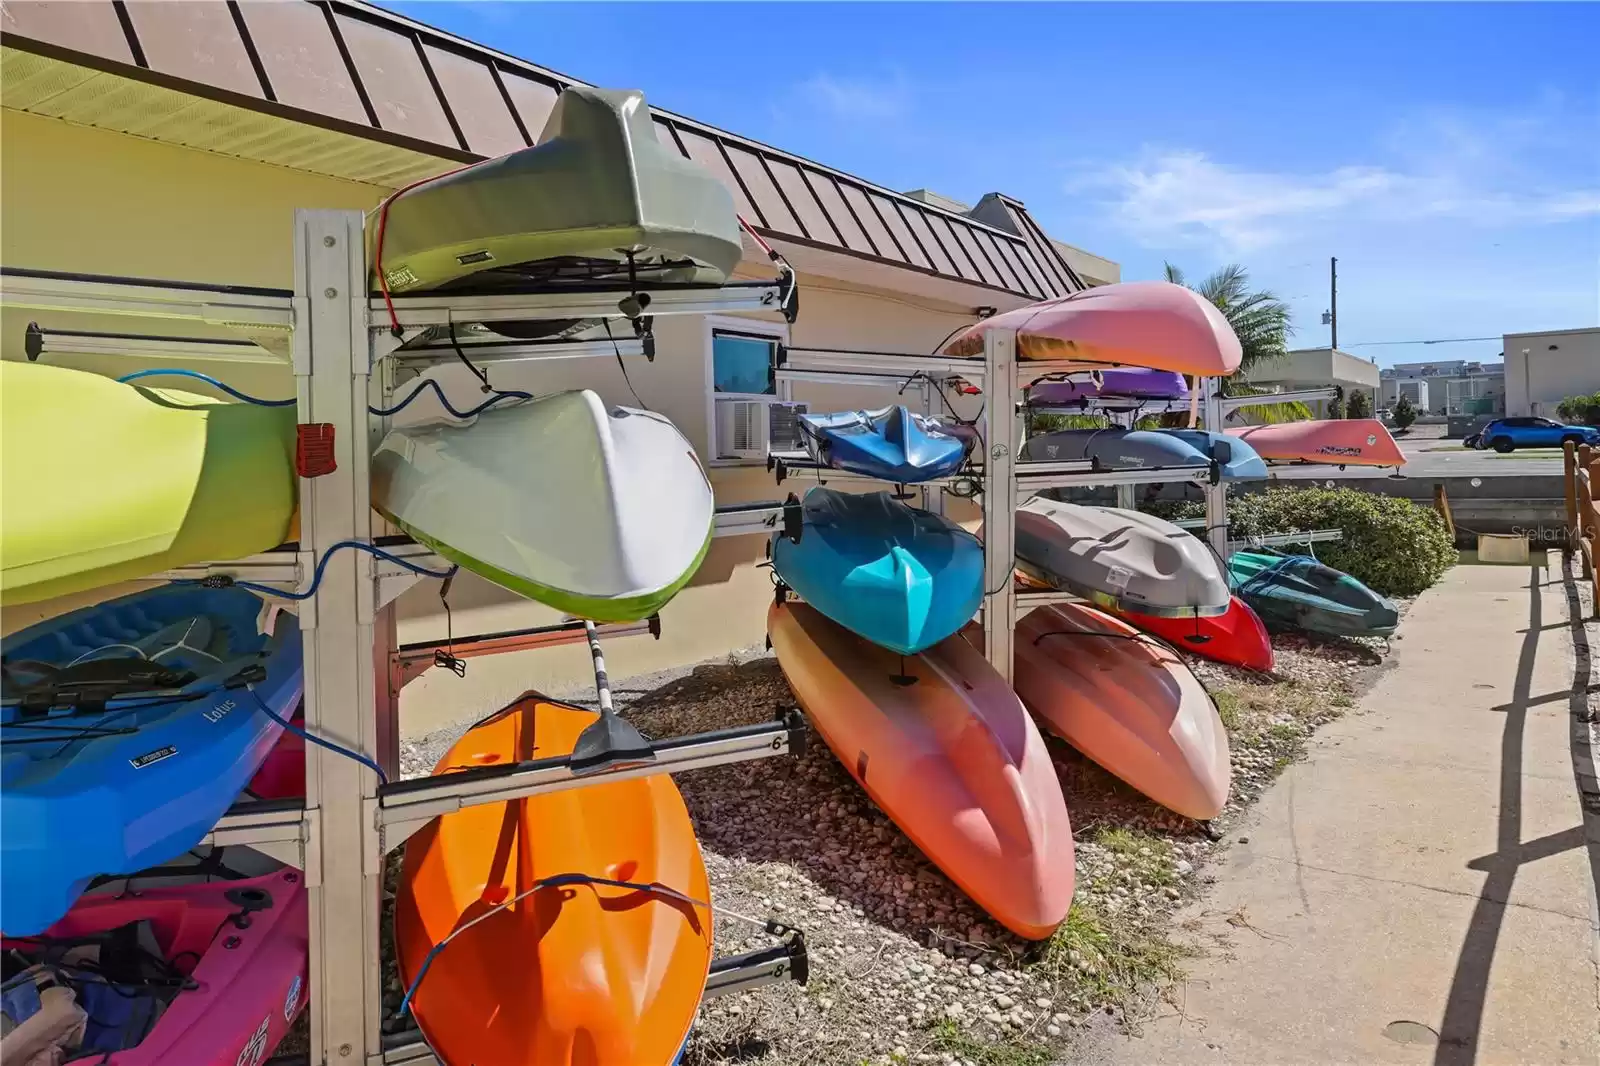 Kayak Storage